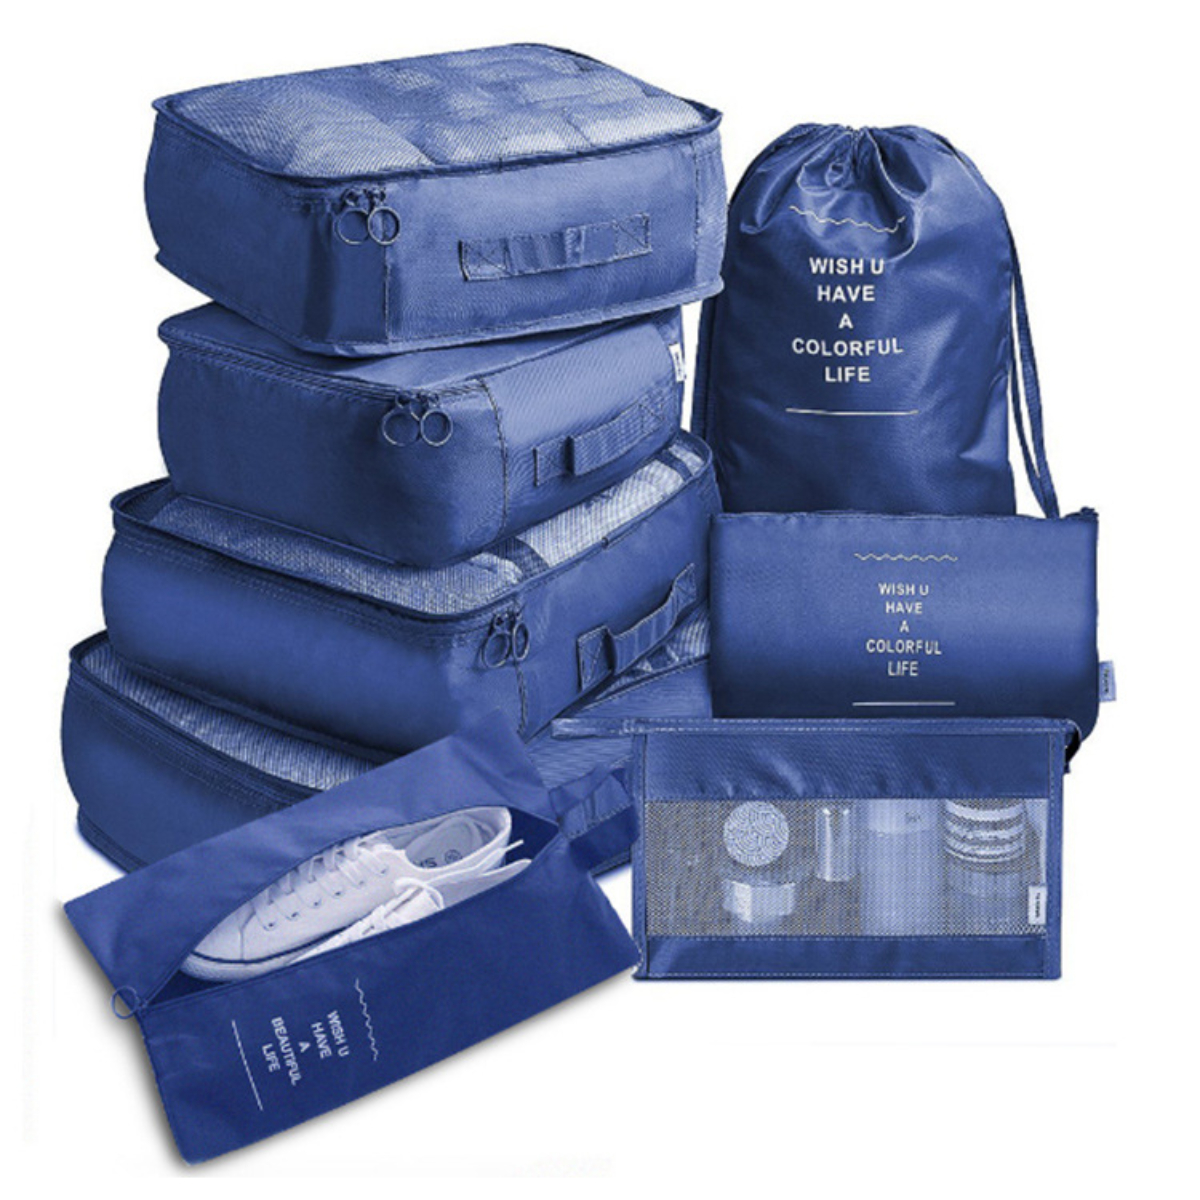 SYNTEK Organizer Set Blau Organizer Bag 8-teilig Blau Organizer Travel Sorting Clothes Travel